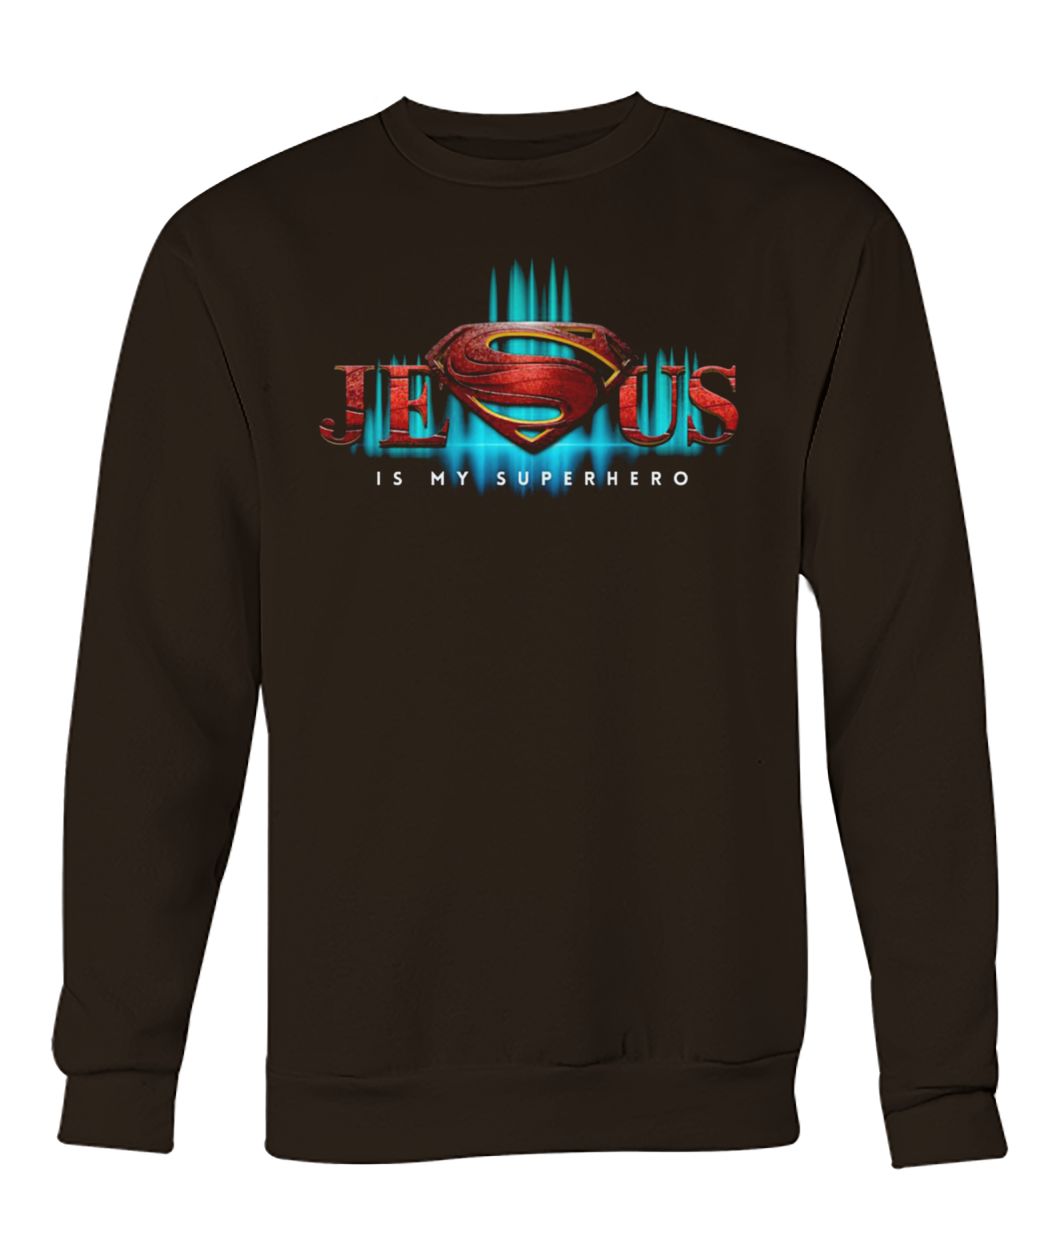 Jesus is my superhero crew neck sweatshirt